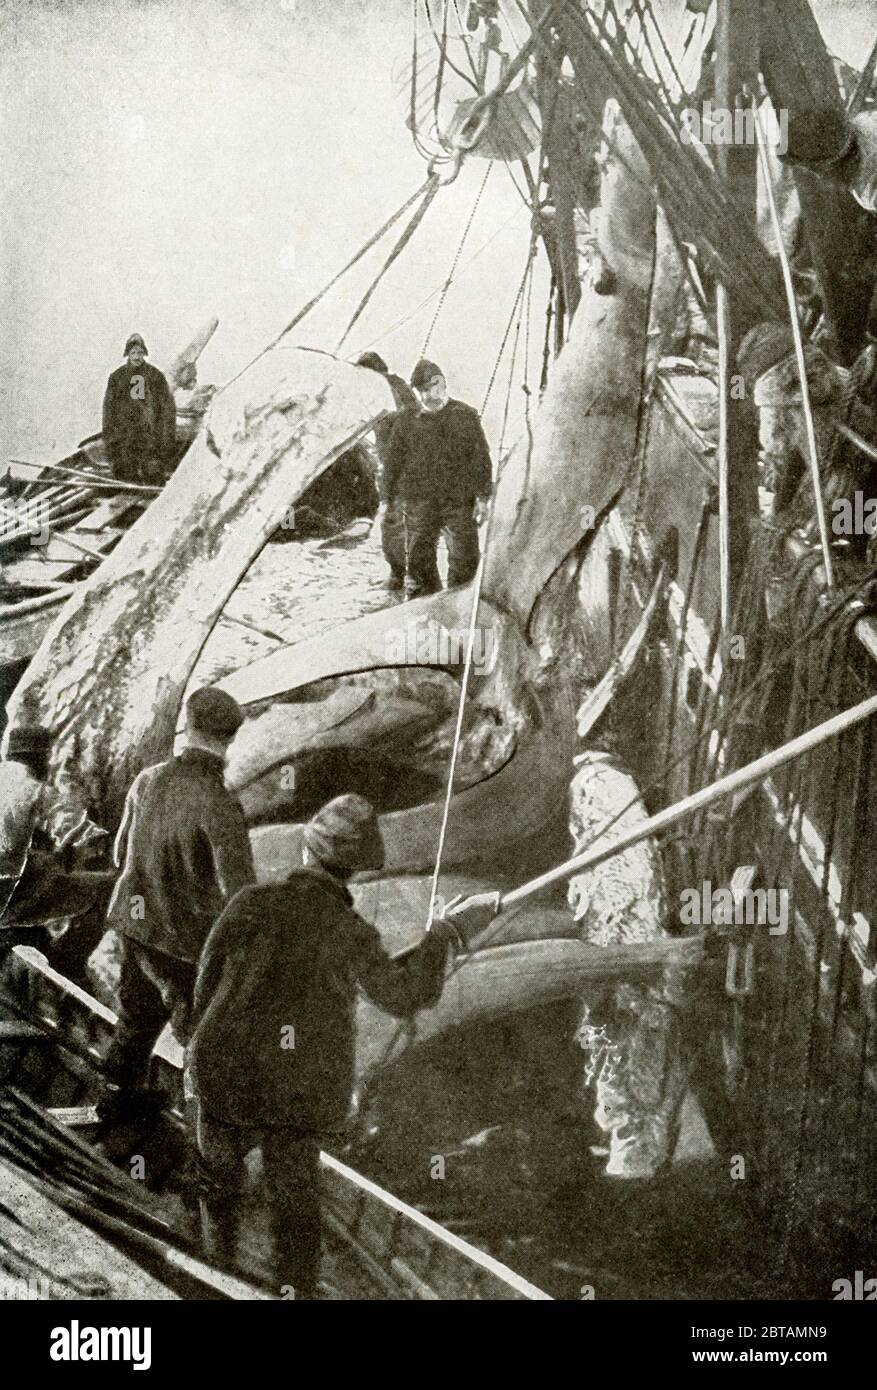 Questa fotografia dei primi anni del '900 mostra la caccia alle balene nella baia di Baffin. I balenieri stanno prendendo il whalebone del valore di 8000 dollari (al momento) dalla bocca della balena groenlandese. Foto Stock